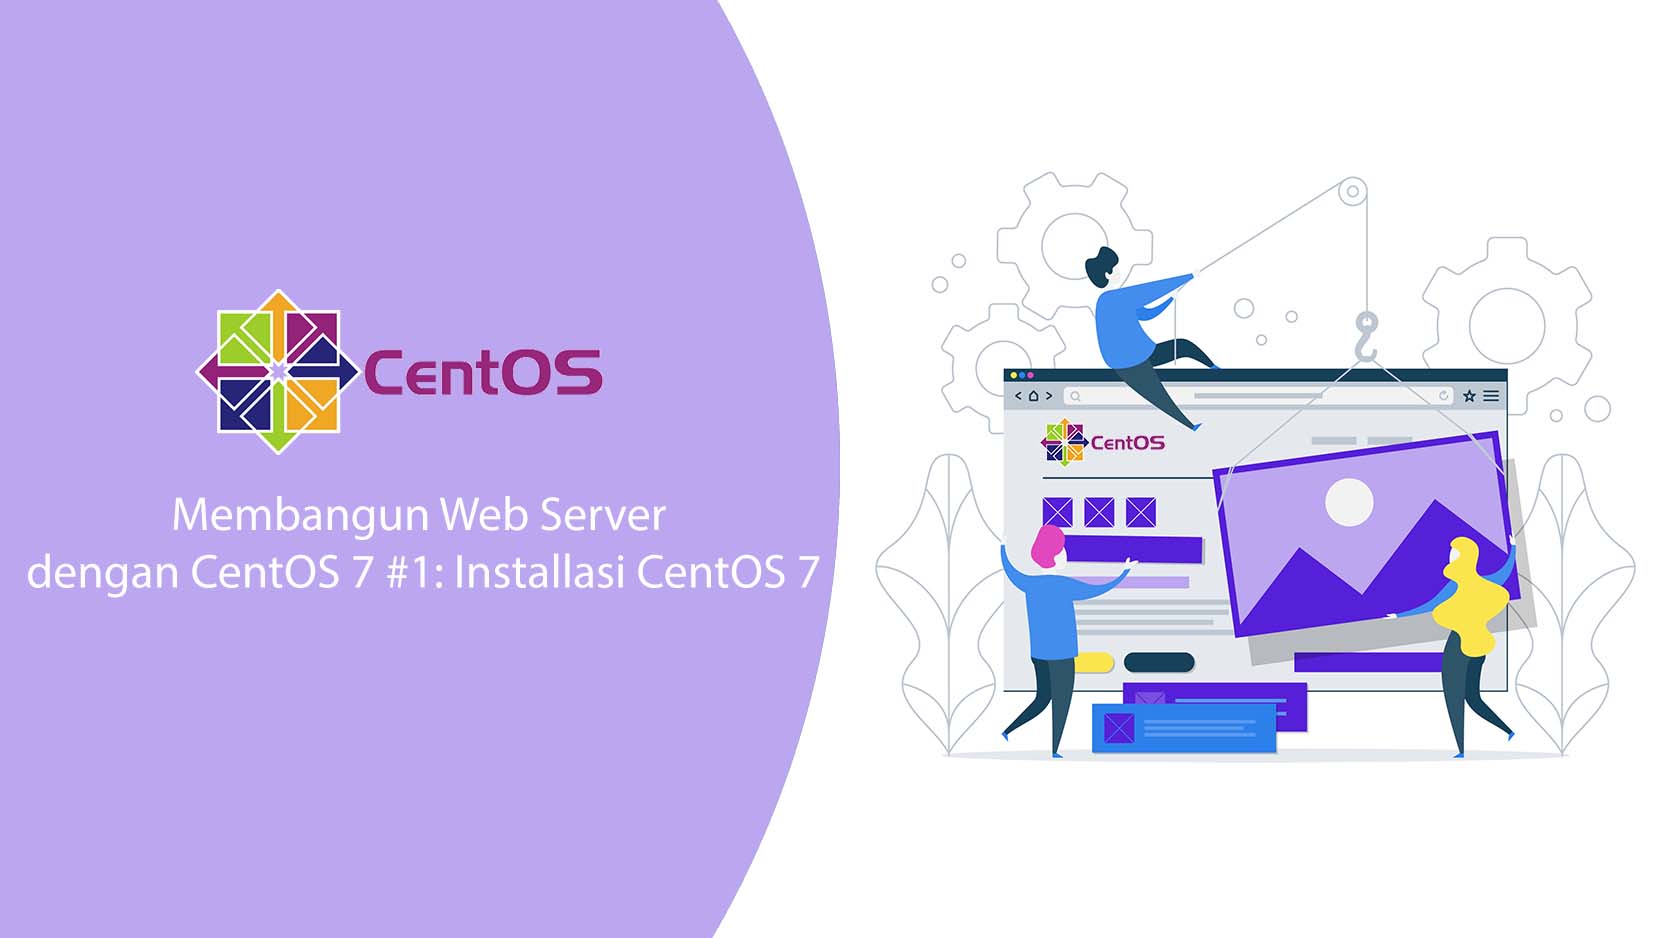 Membangun Web Server CentOS 7 #1 : Installasi CentOS 7